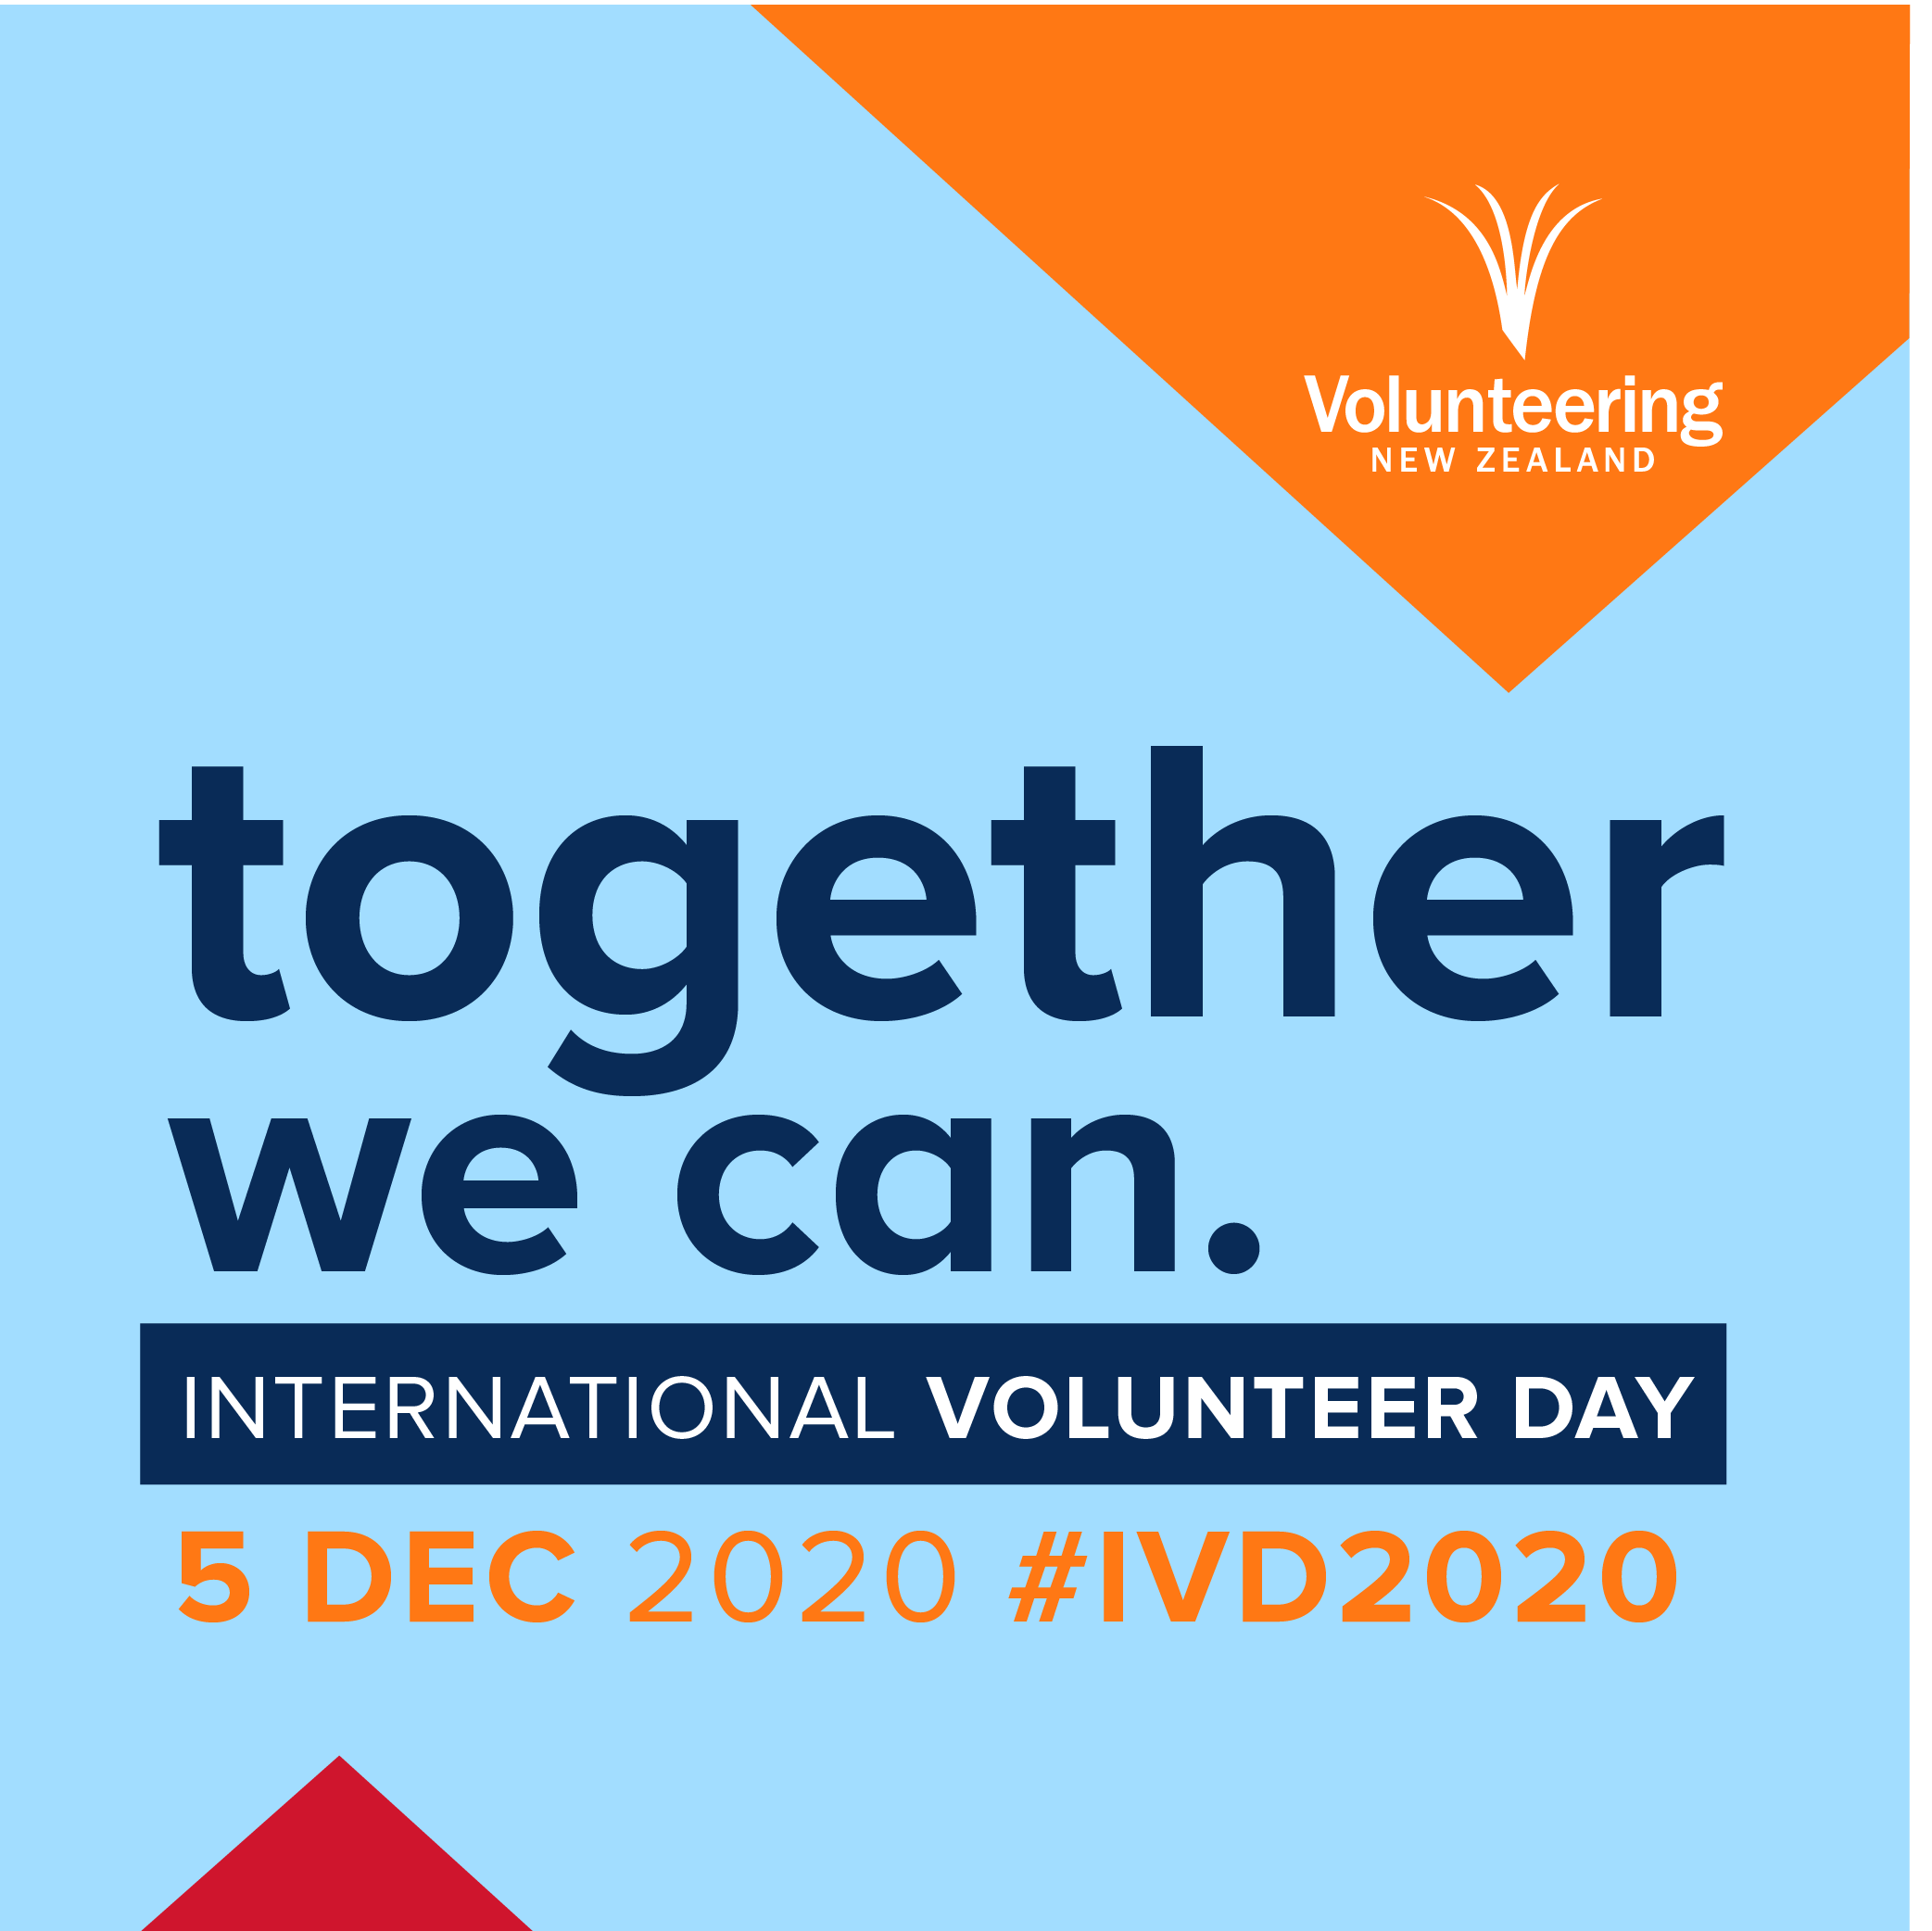 International Volunteer Day resources Volunteering New Zealand